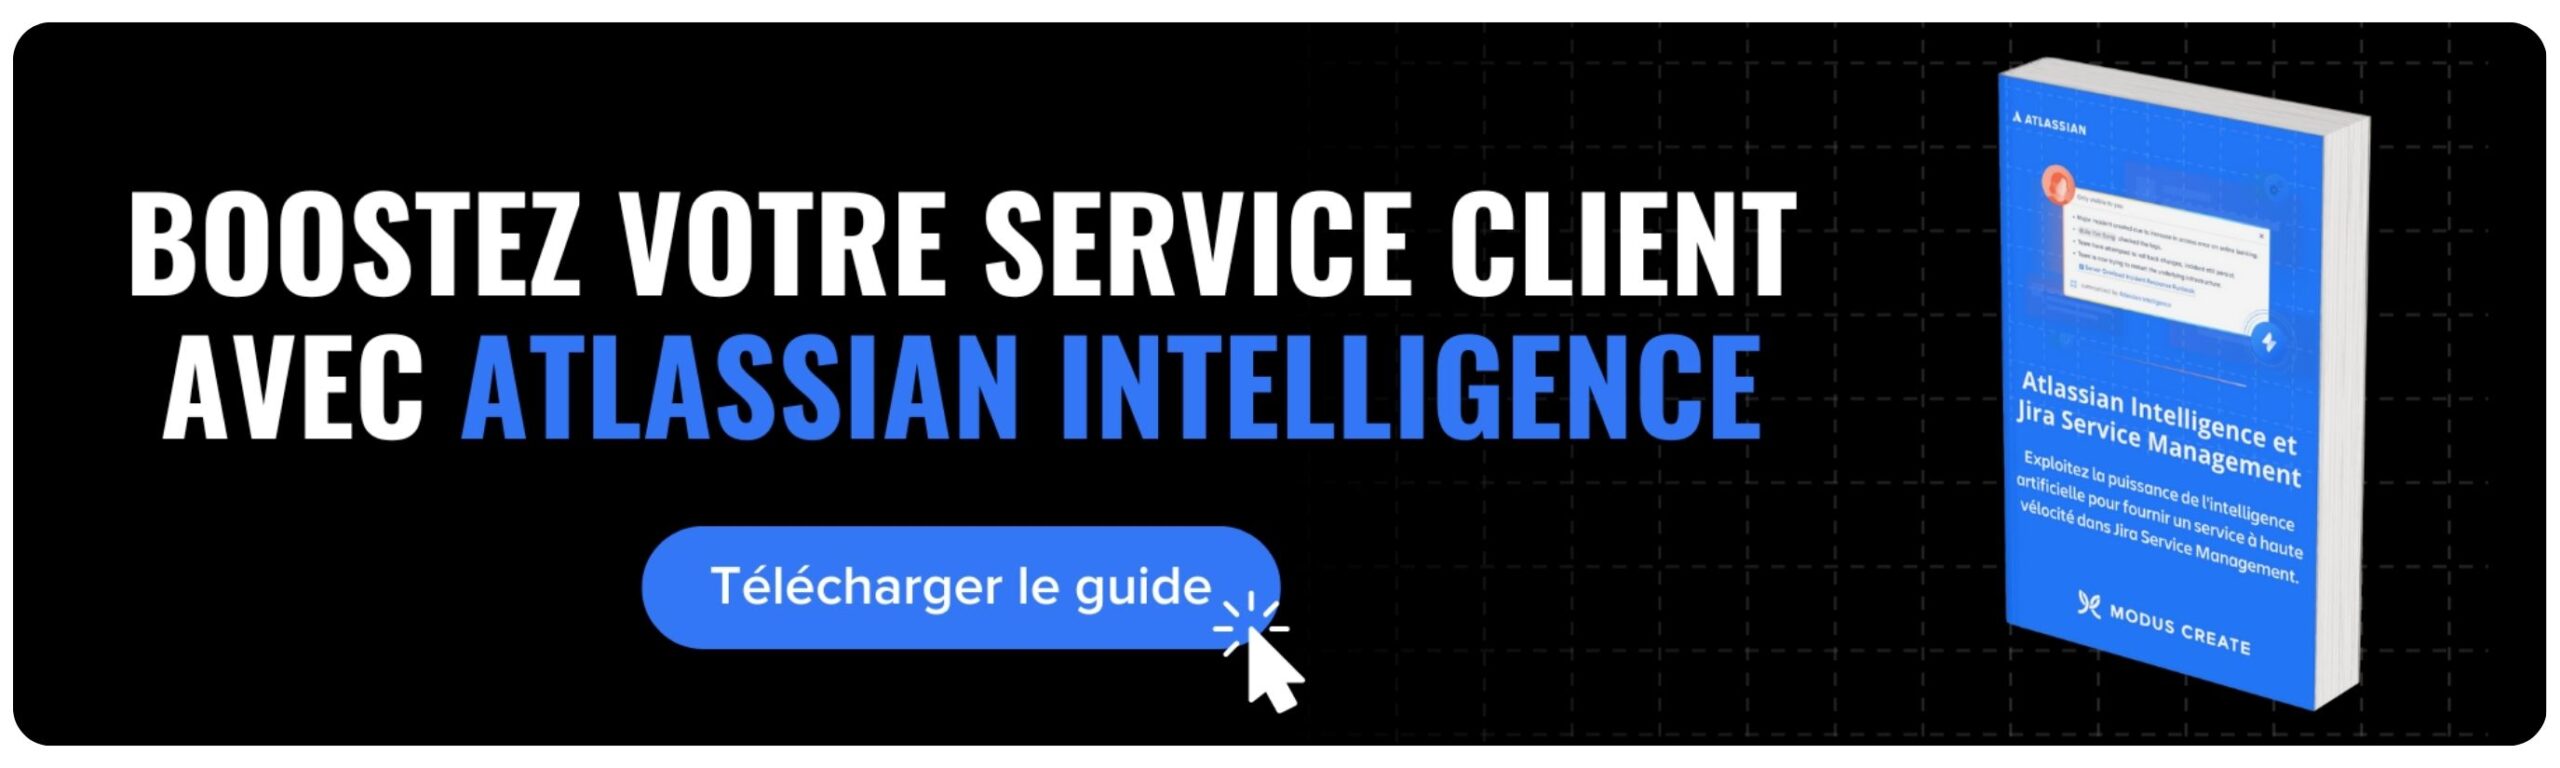 Boostez votre service client avec Jira Service Management et Atlassian Intelligence